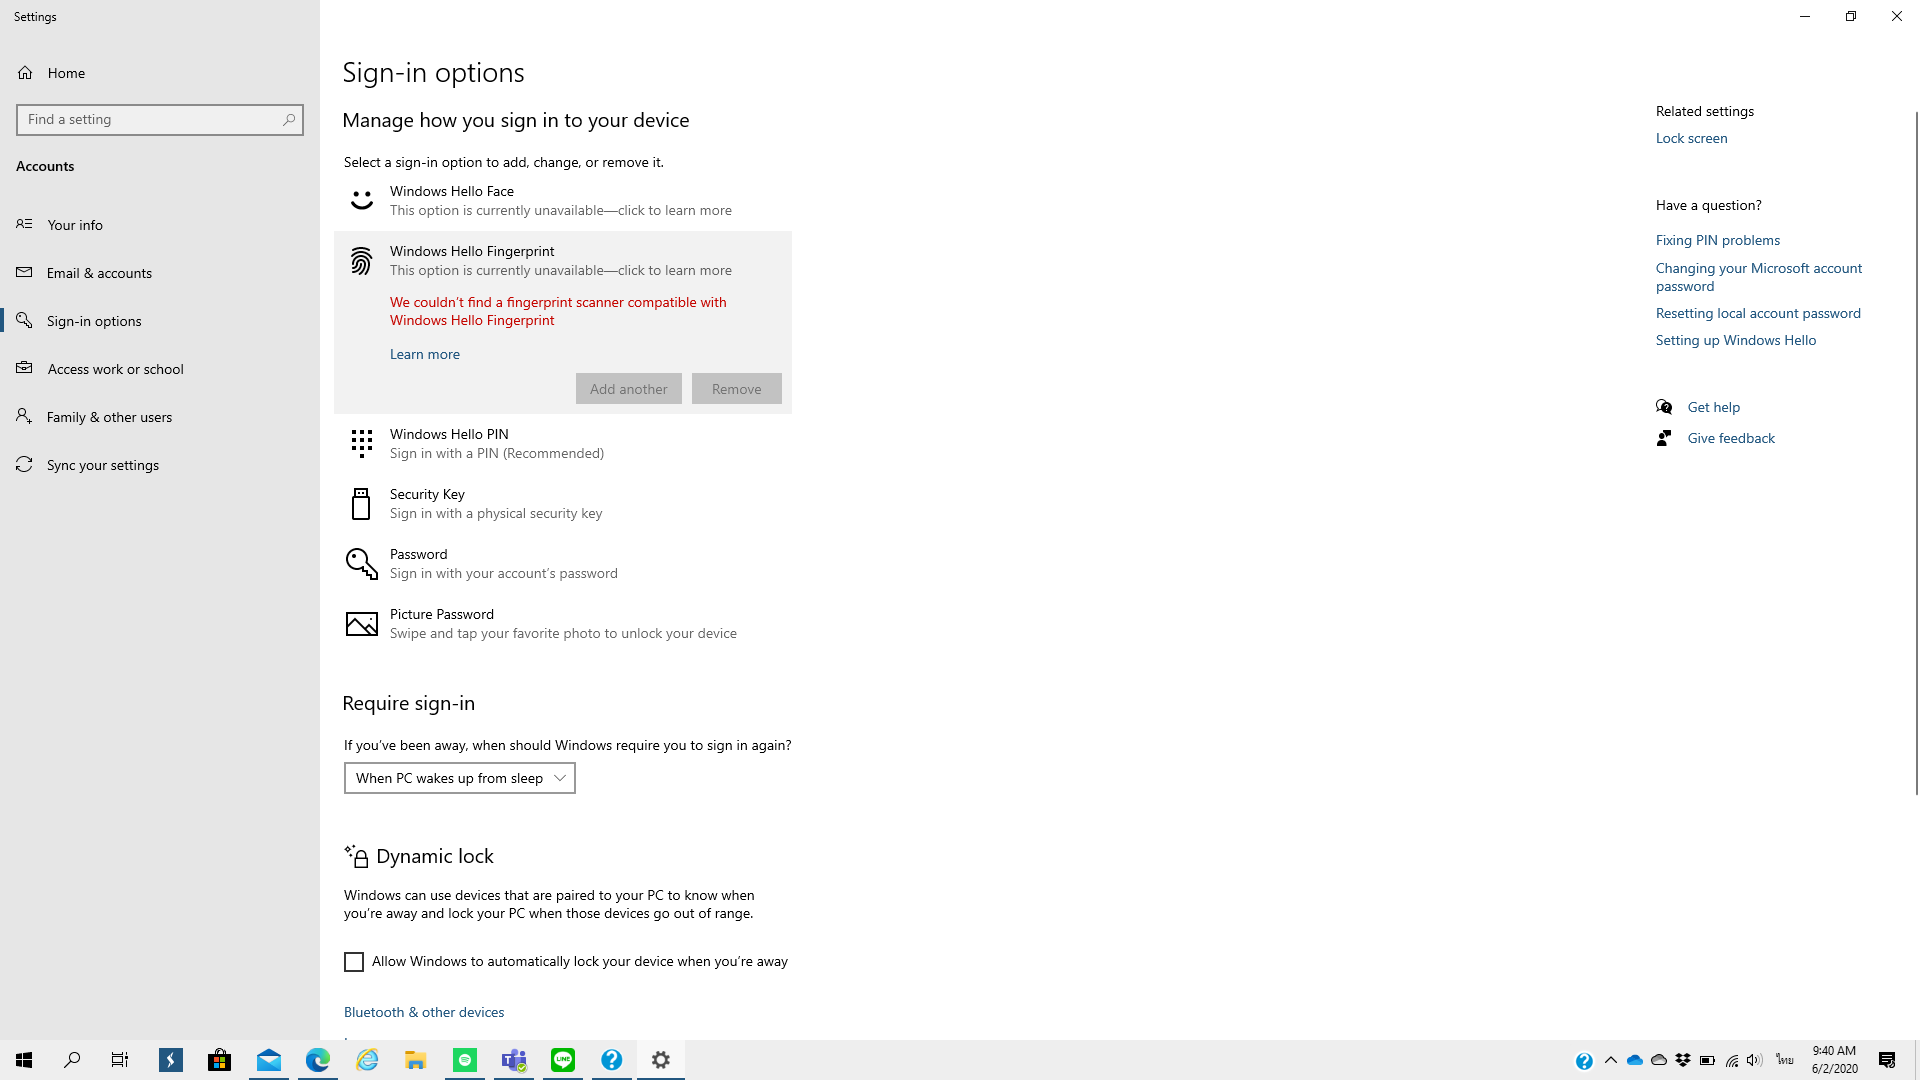 ใช้งาน Windows hello face และ fingerprint ไม่ได้ 7012cd8a-4fbd-43ca-9856-2361000198c0?upload=true.png